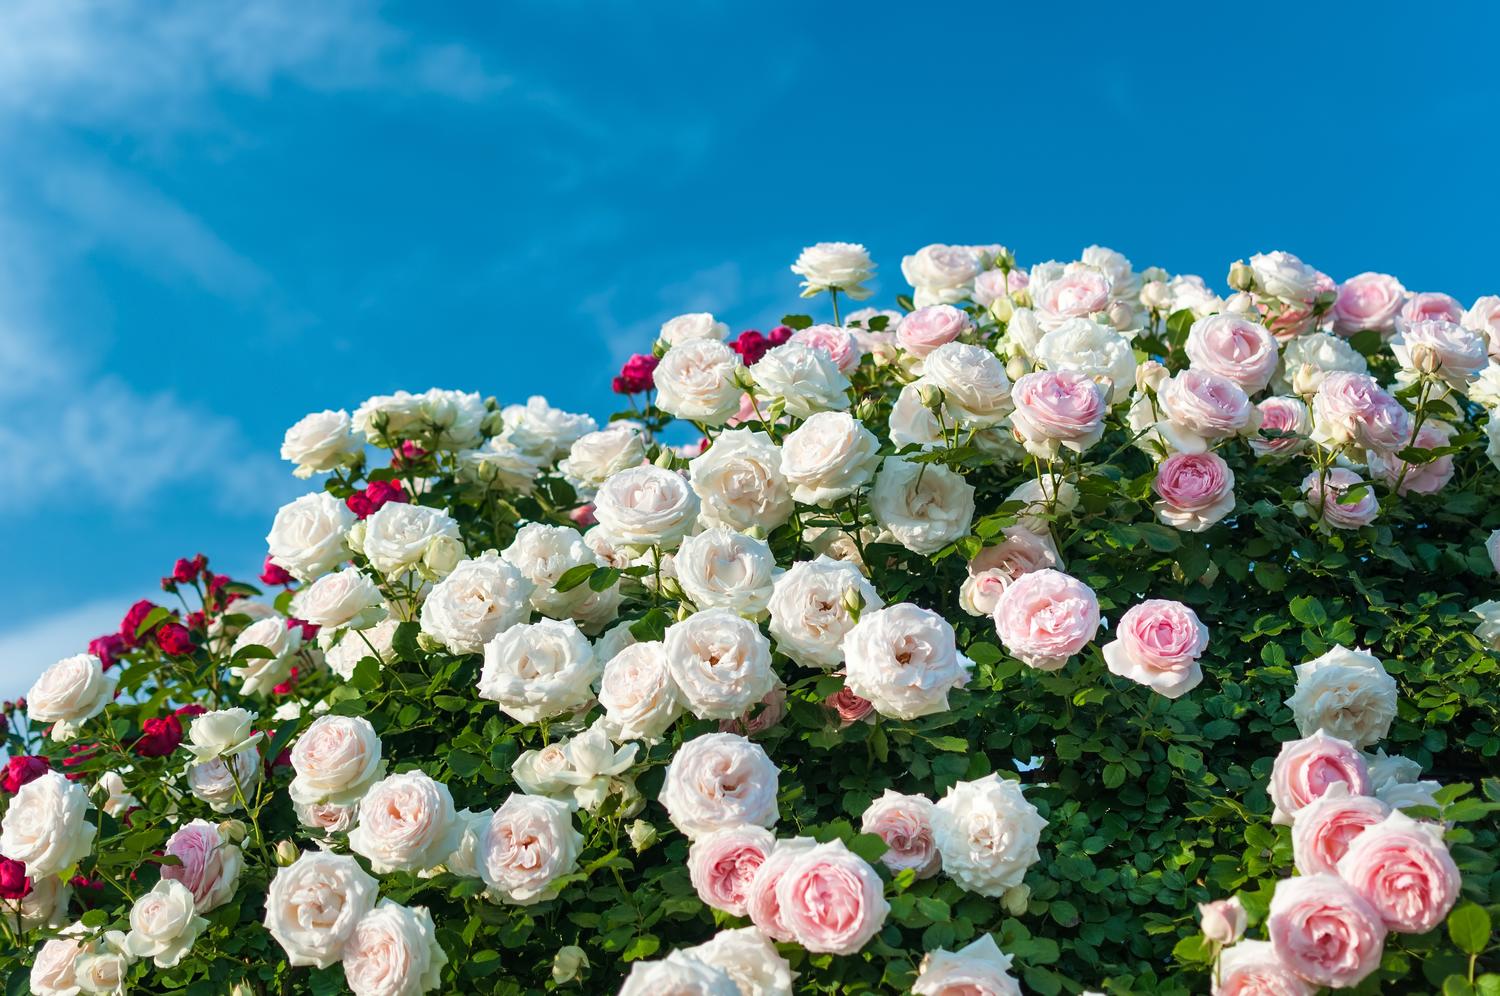 京成バラ園 のバラの見ごろやバラまつりとバラ園情報 バラ園案内 バラの見ごろと開花状況